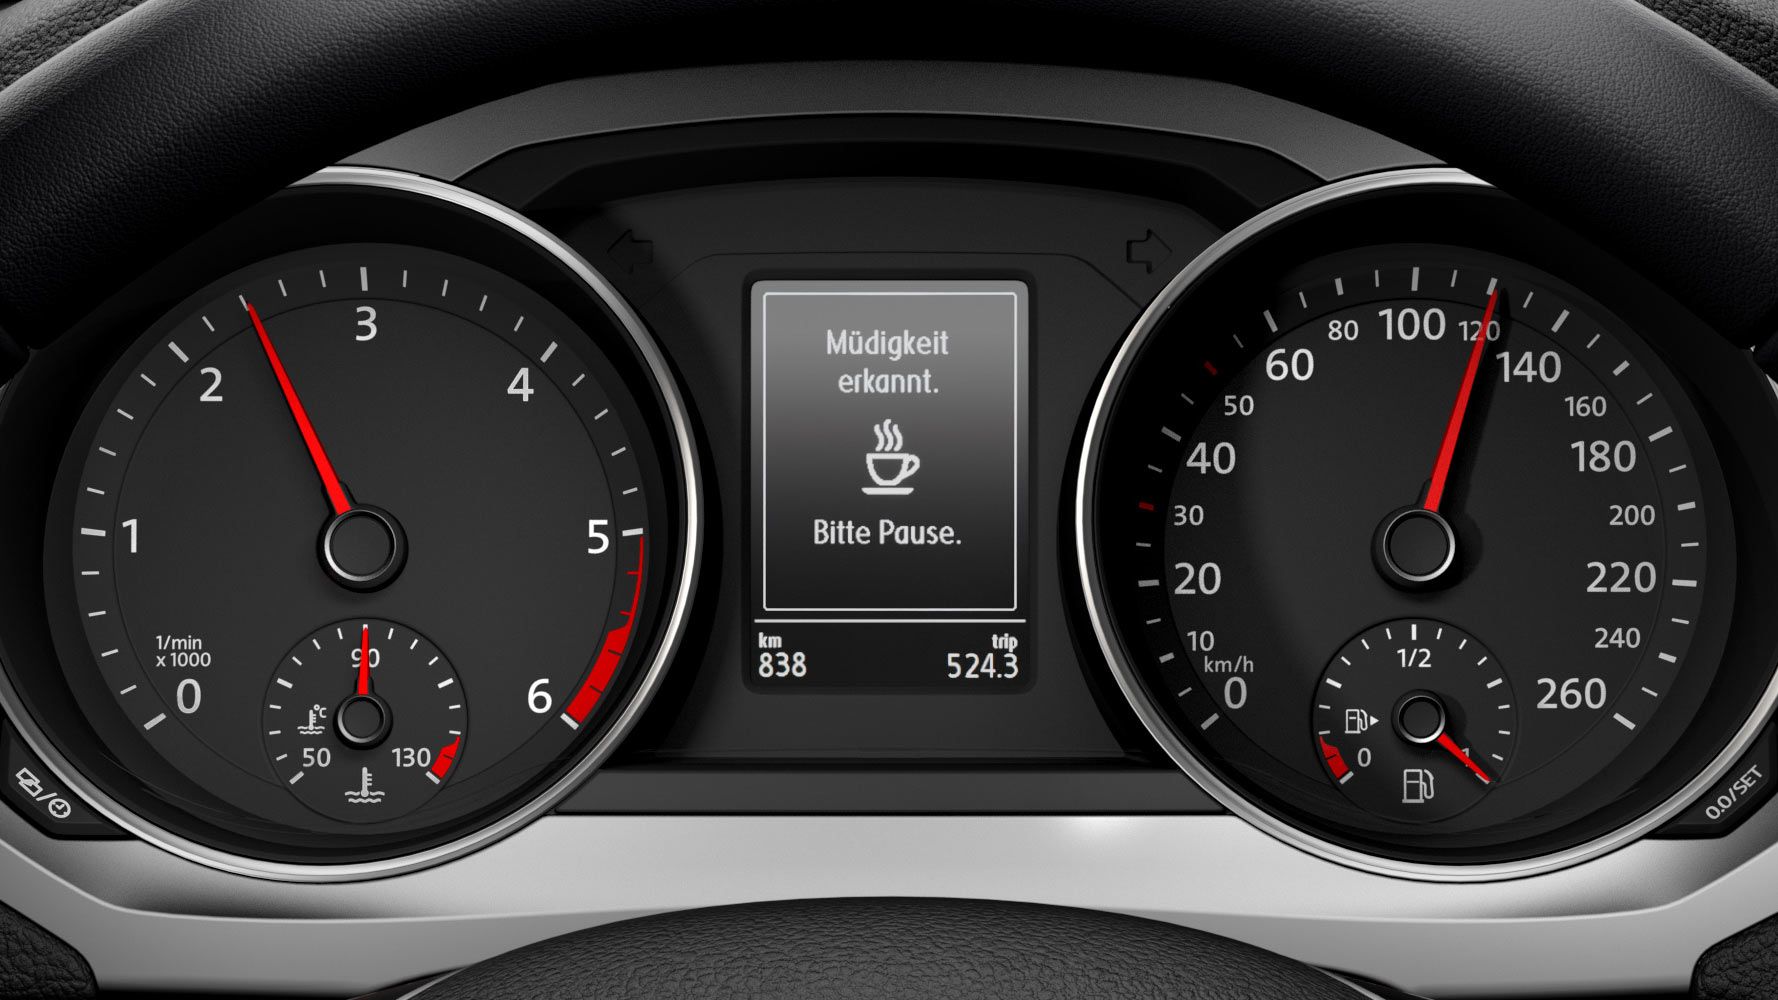 Müdigkeitserkennung-Anzeige im Cockpit des VW Jetta